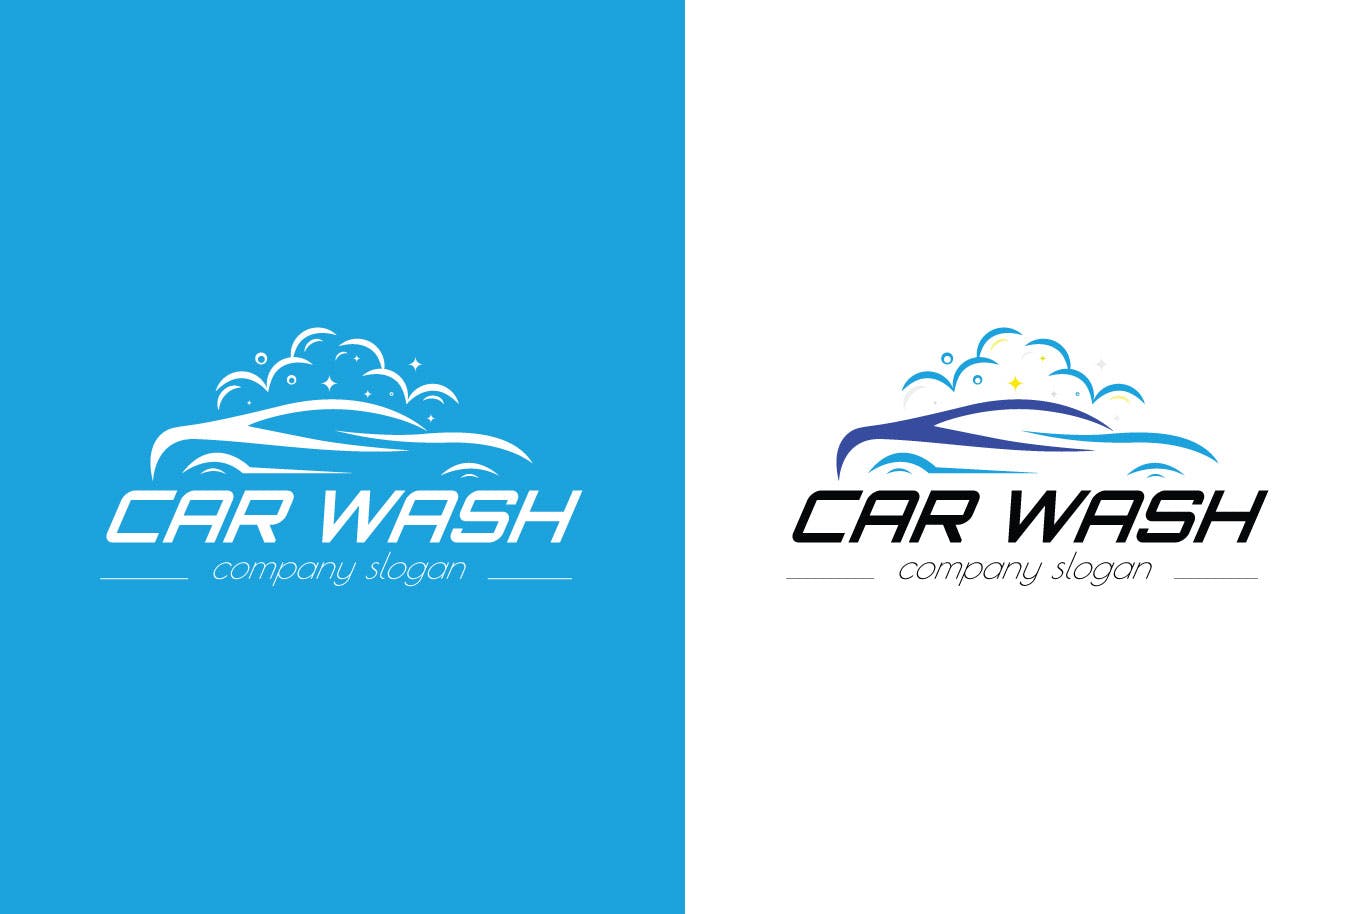 洗车店品牌Logo设计蚂蚁素材精选模板 Car Wash Business Logo Template插图(1)